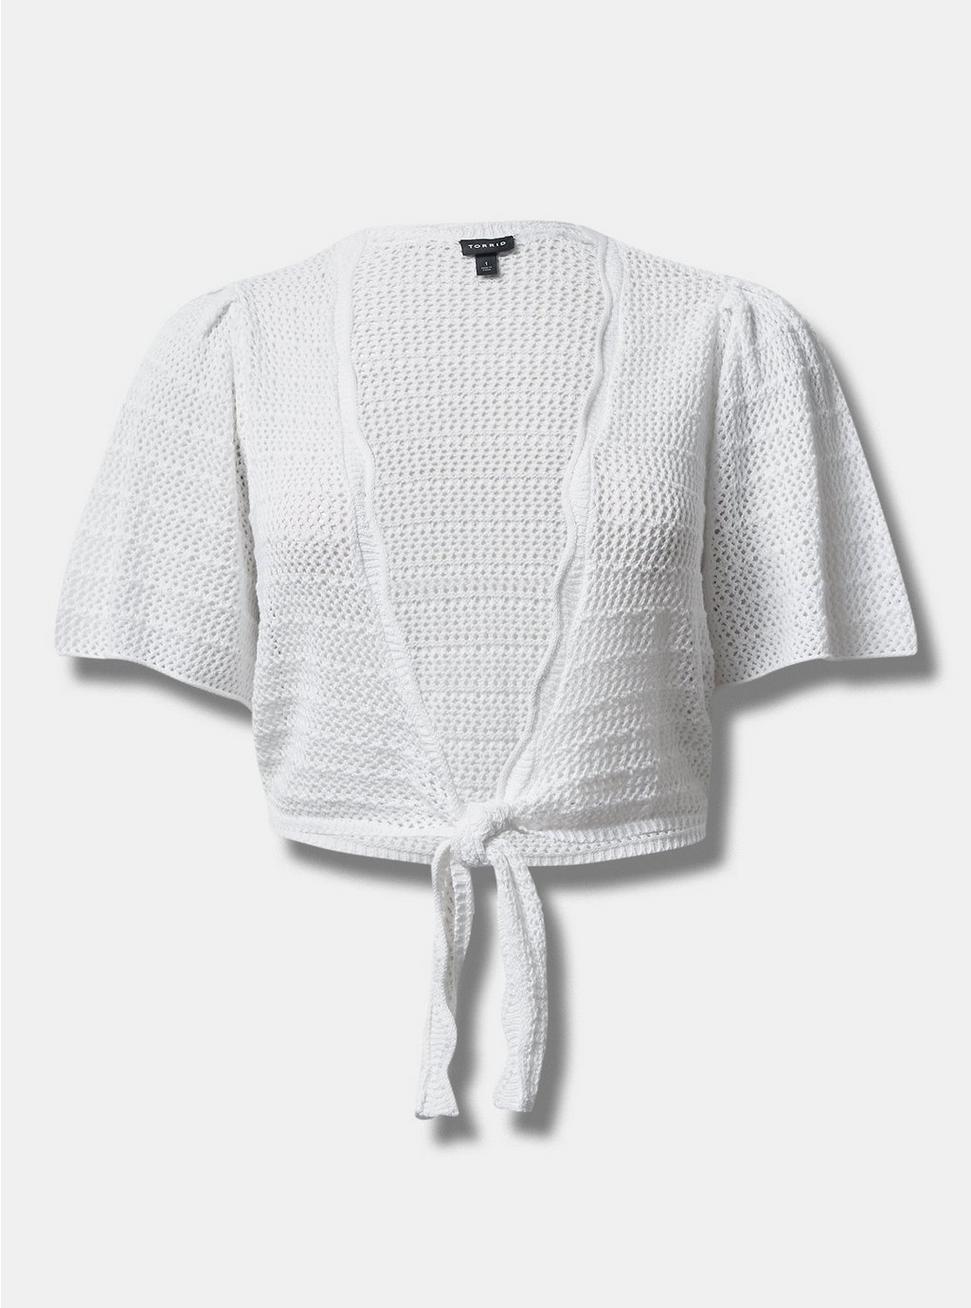 Plus Size Cardigan Tie Front Shrug Sweater, BRIGHT WHITE, hi-res